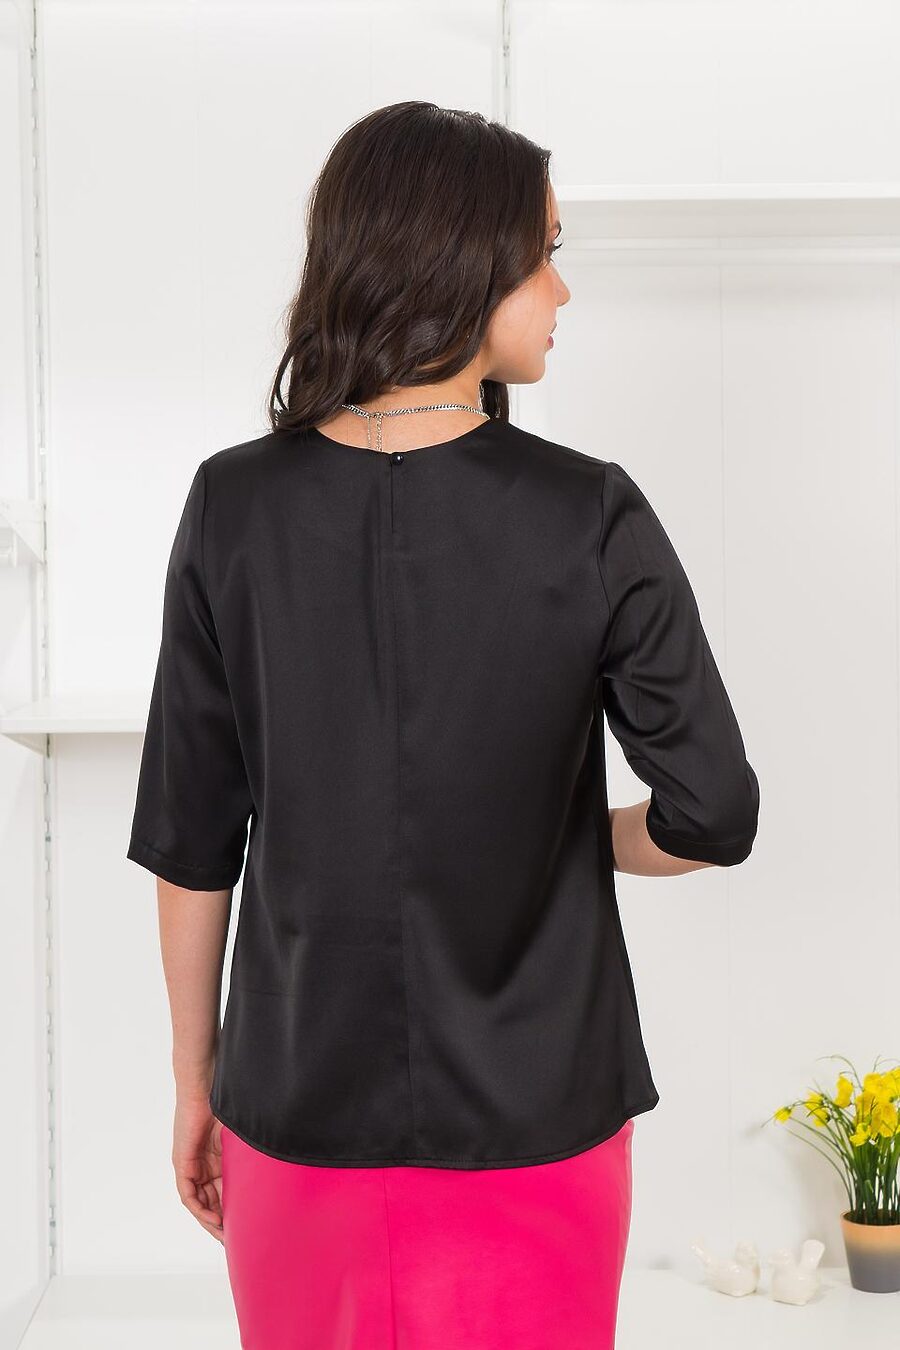 Блузка  для женщин BRASLAVA 796393 купить оптом от производителя. Совместная покупка женской одежды в OptMoyo